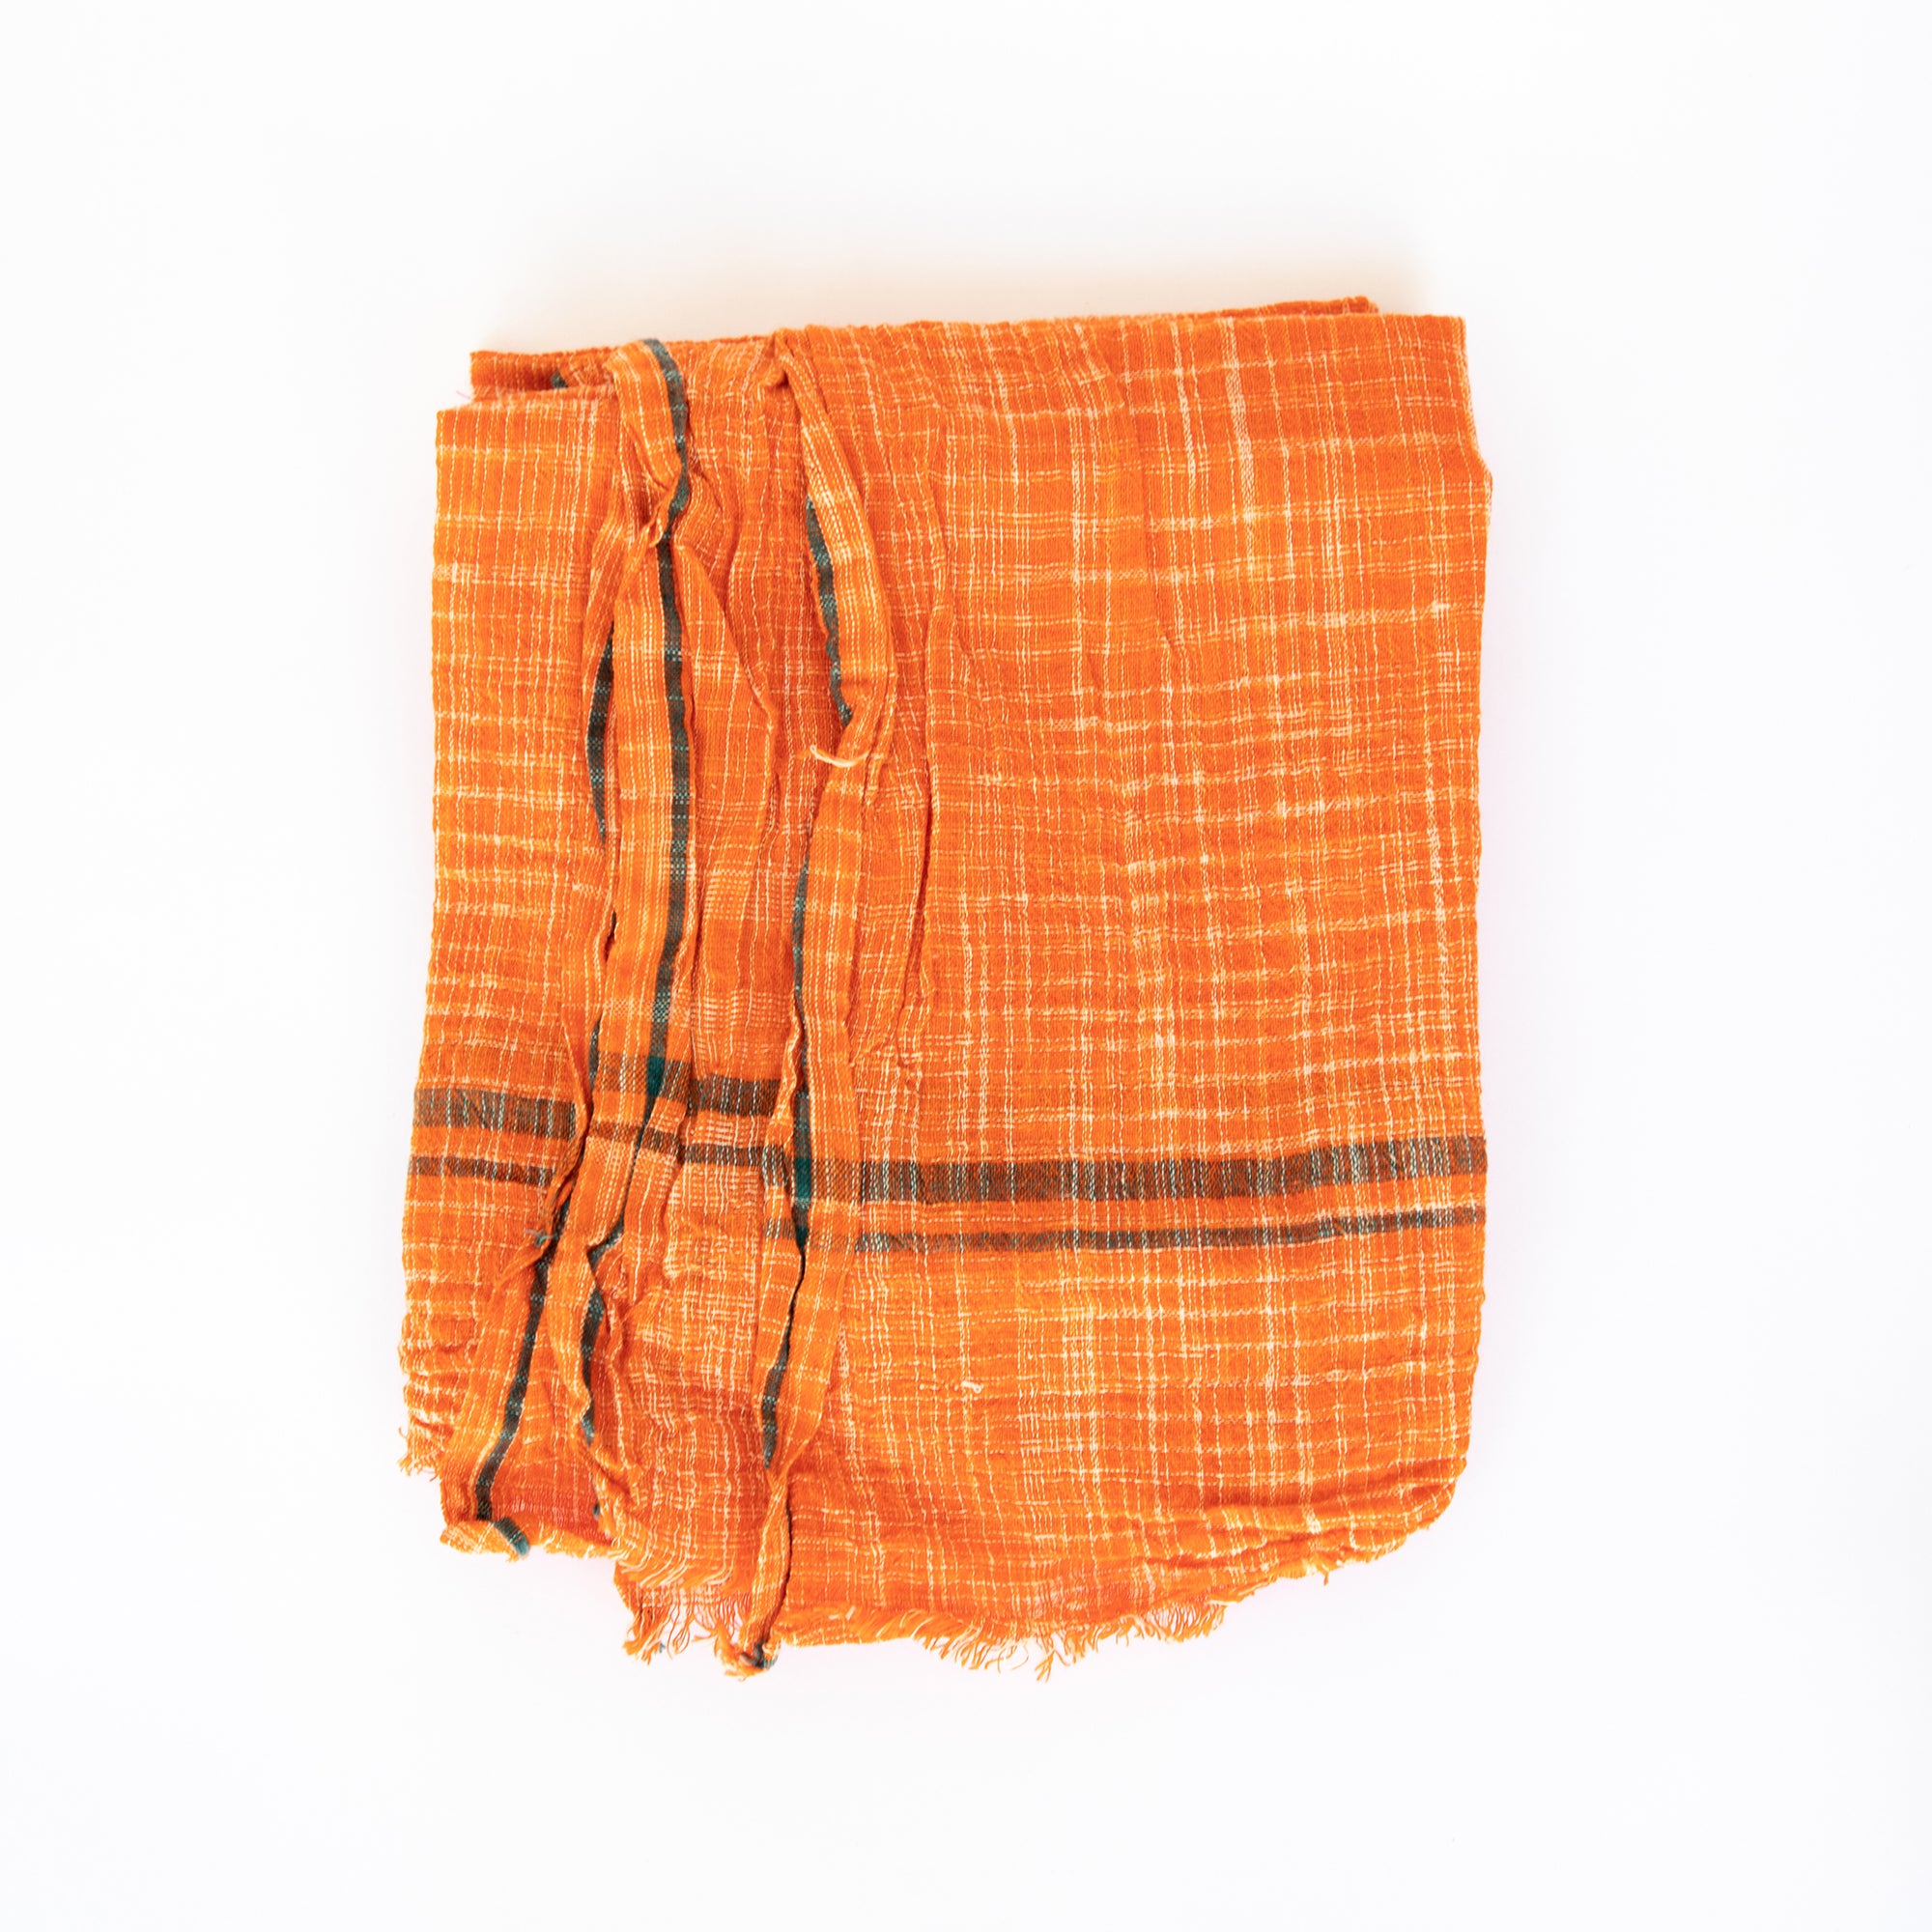 Rustic Bright Towel - Orange